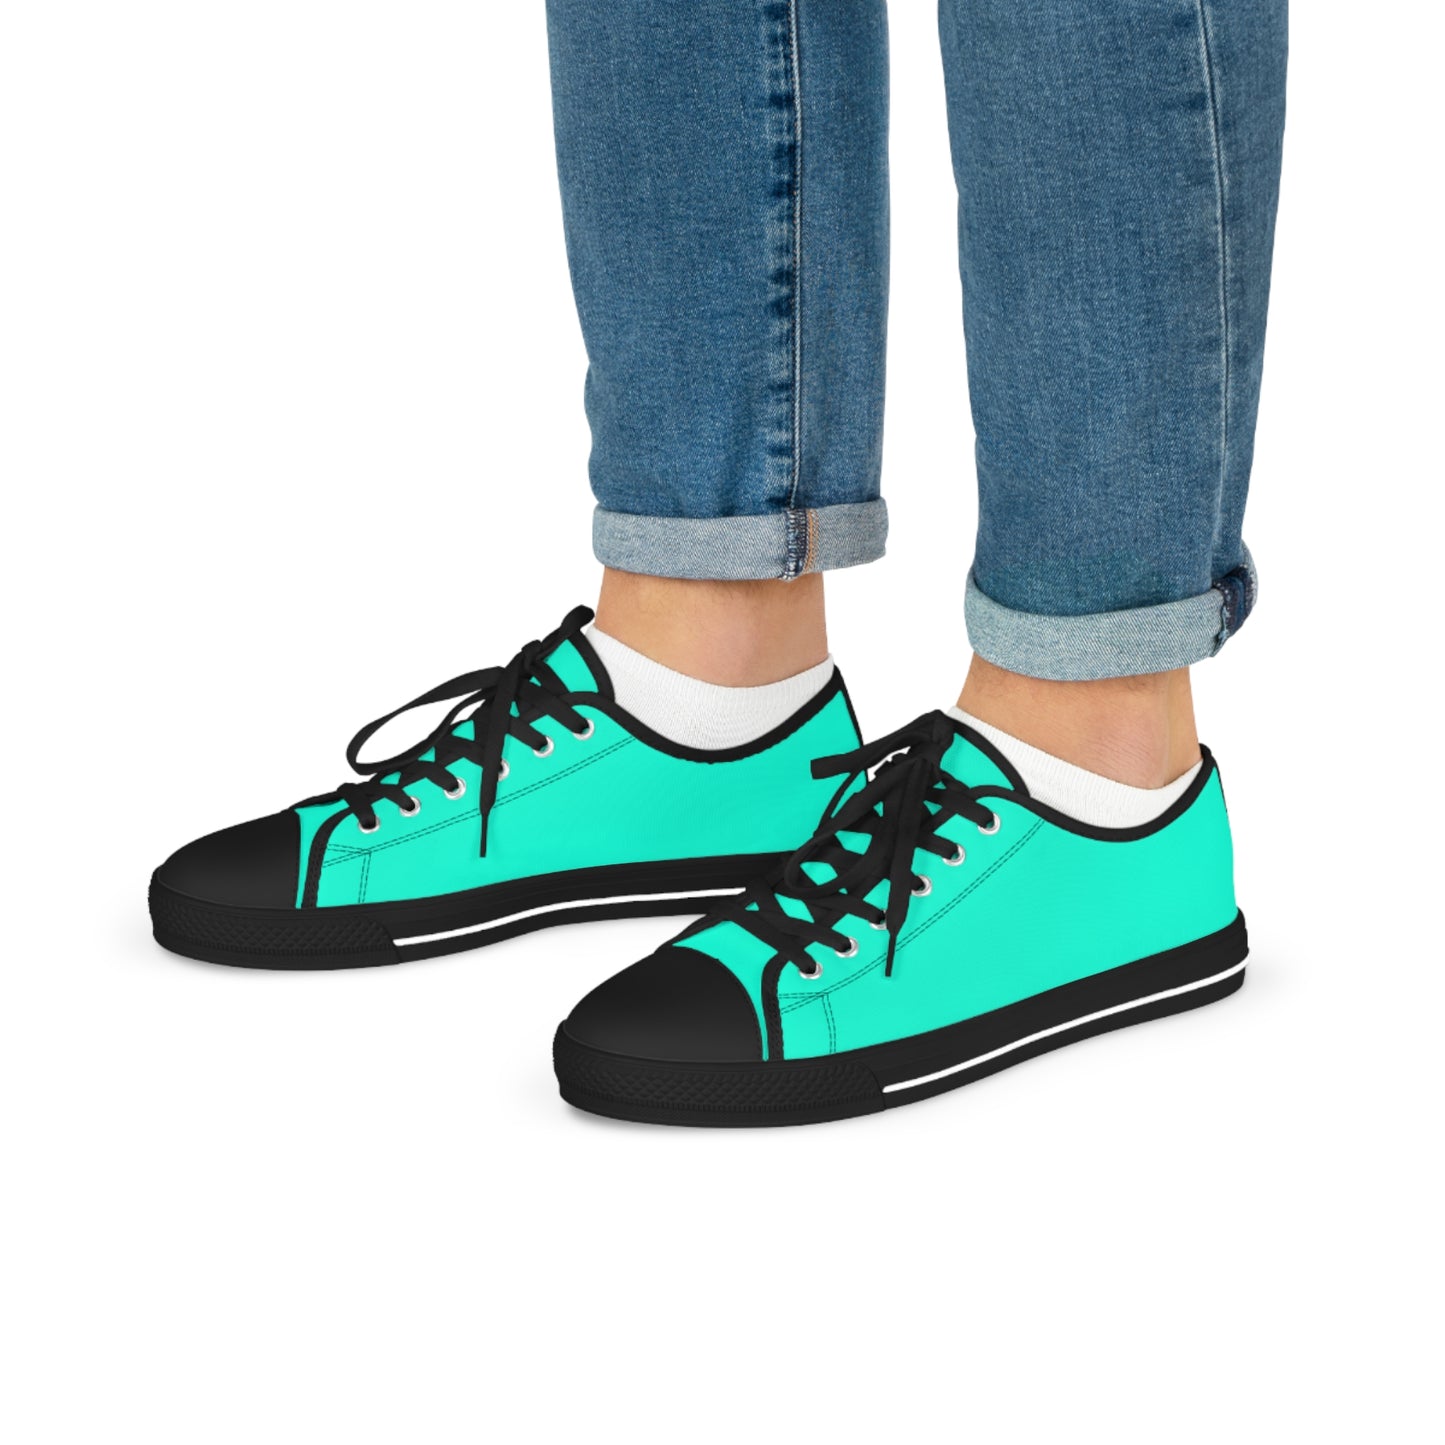 Men's Canvas Low Top Solid Color Sneakers - Cool Pool Aqua Green US 14 Black sole